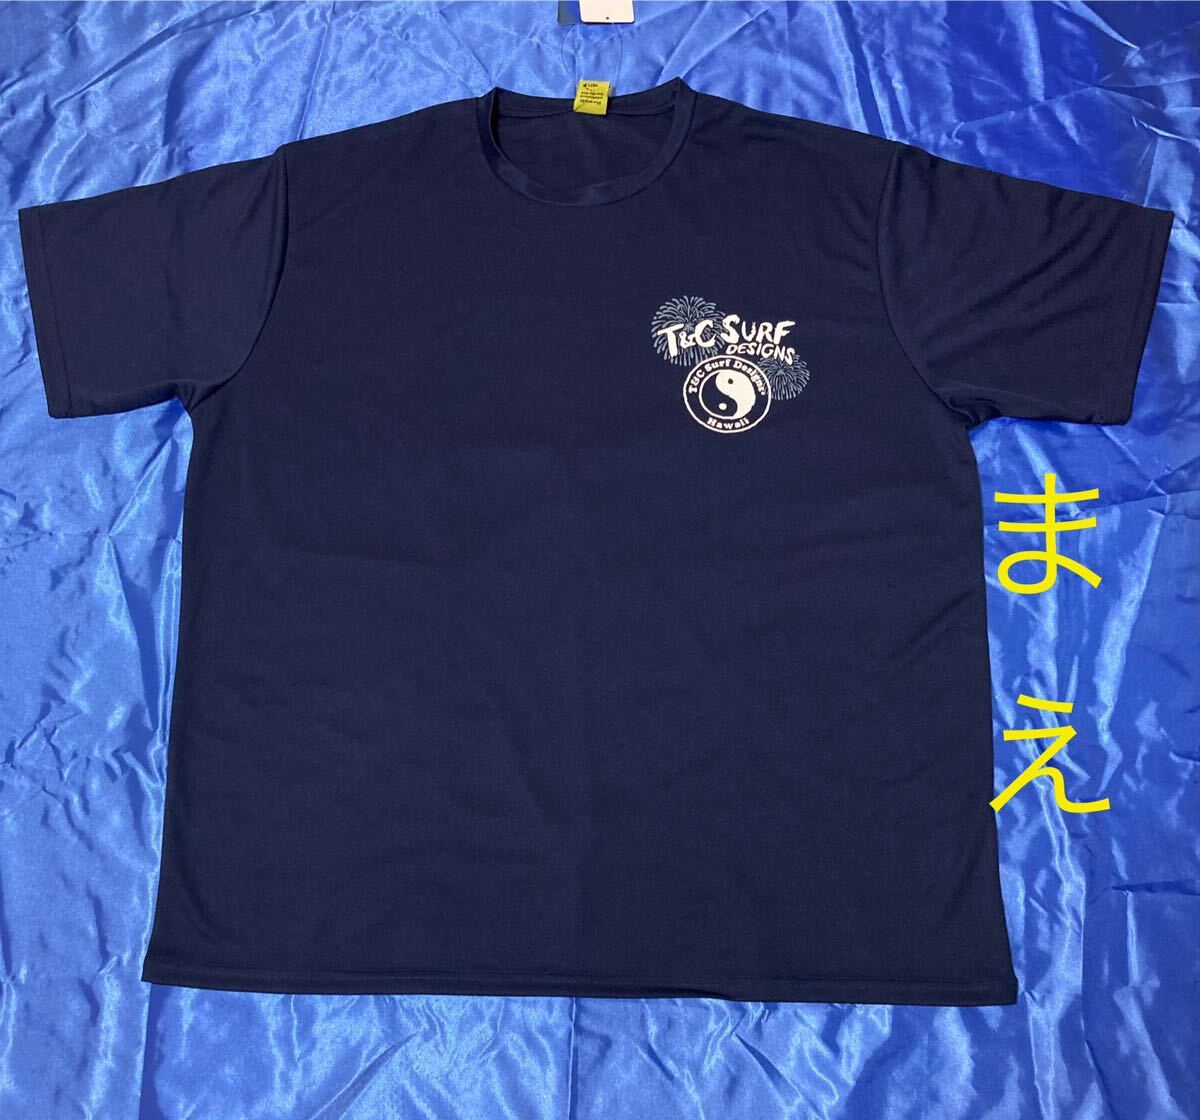 T&C surf (花火)メッシュ半袖Tシャツ メンズ大きいサイズ 5L 